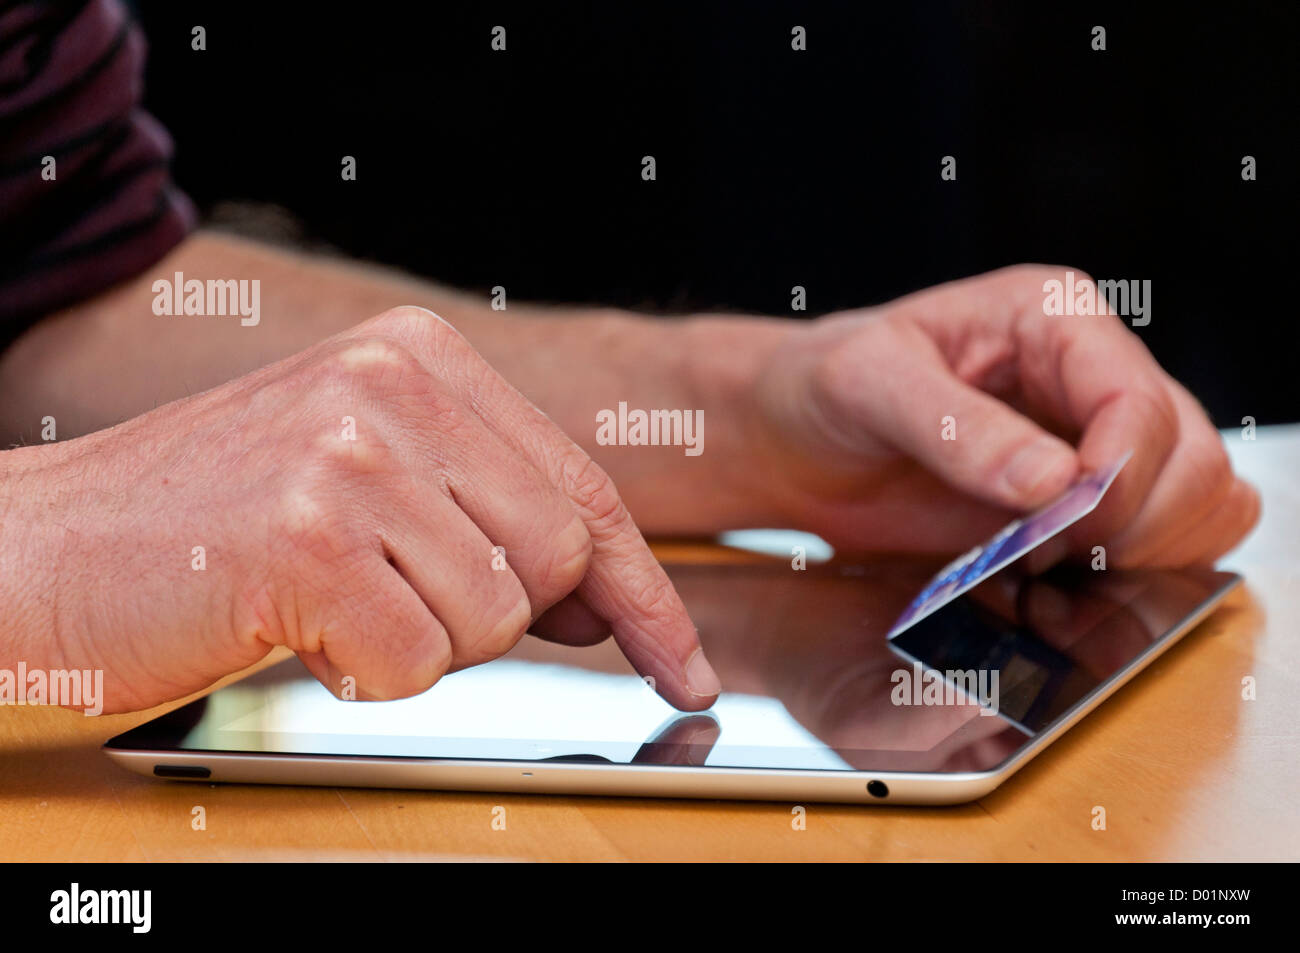 Magasinage en ligne avec un ordinateur tablette. Banque D'Images